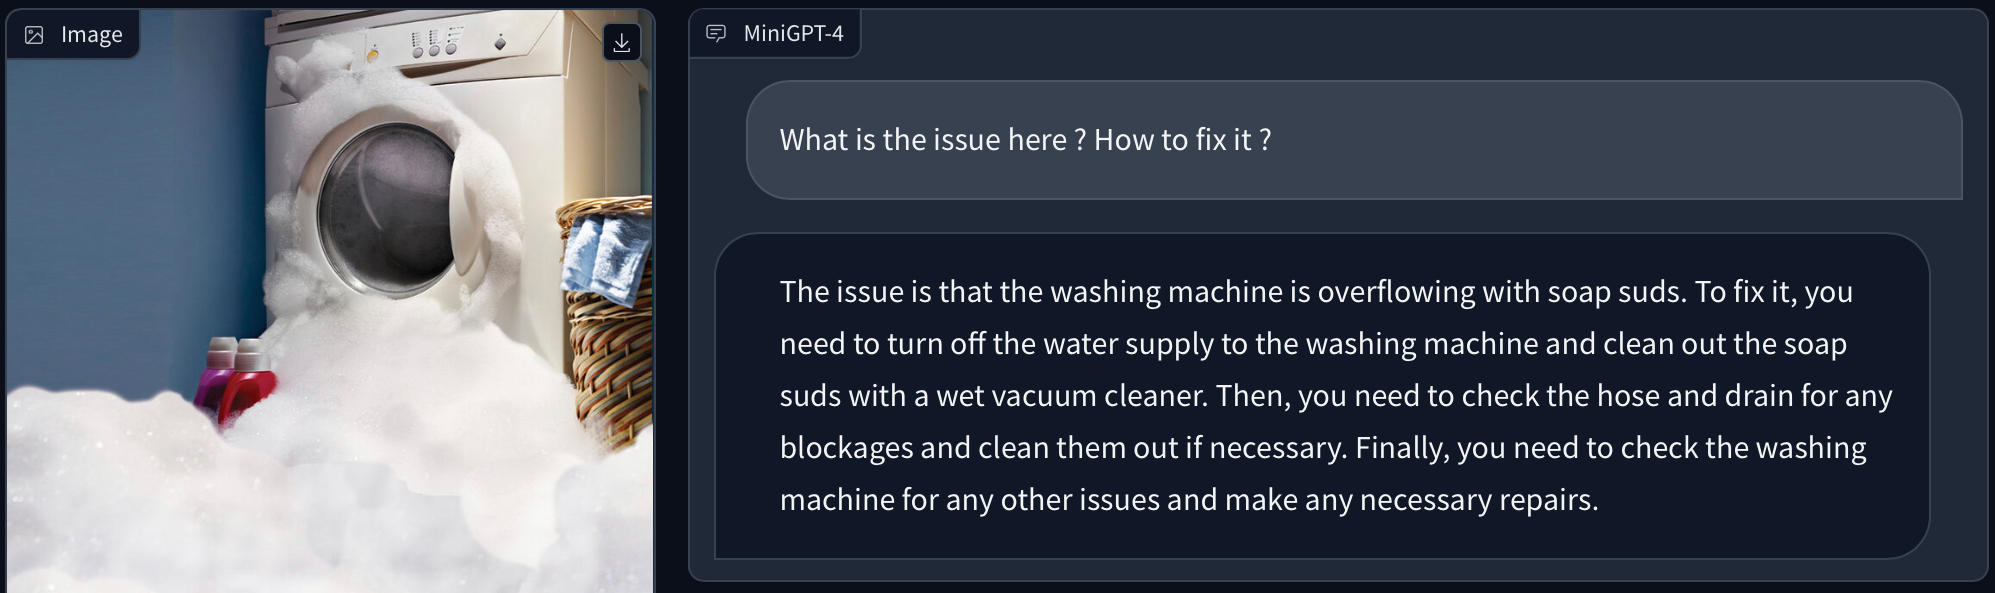 MiniGPT-4 : l'IA analyse la photo d'un lave-linge débordant de mousse, identifie le problème et propose des solutions.